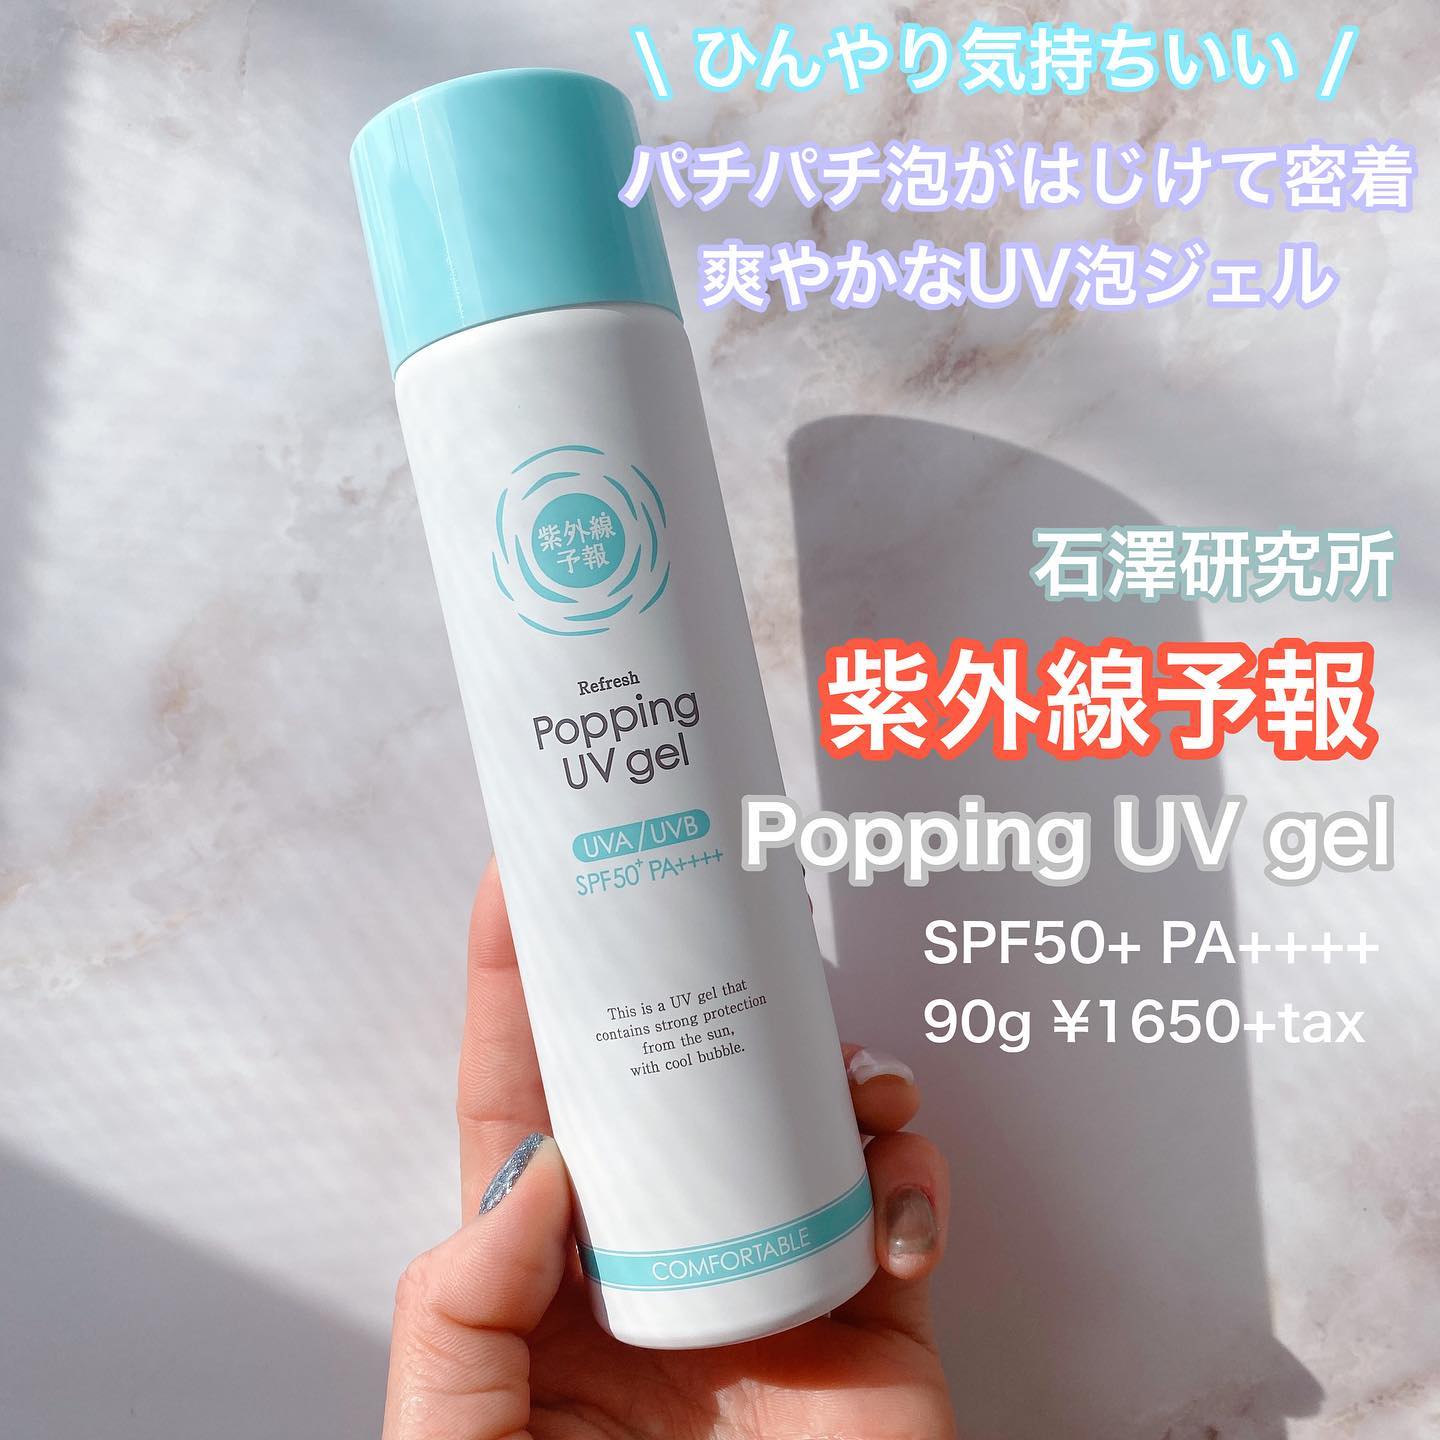 口コミ投稿：石澤研究所紫外線予報 爽やかなUV泡ジェルPopping UV gelSPF50+ PA++++90g ¥1650+tax…